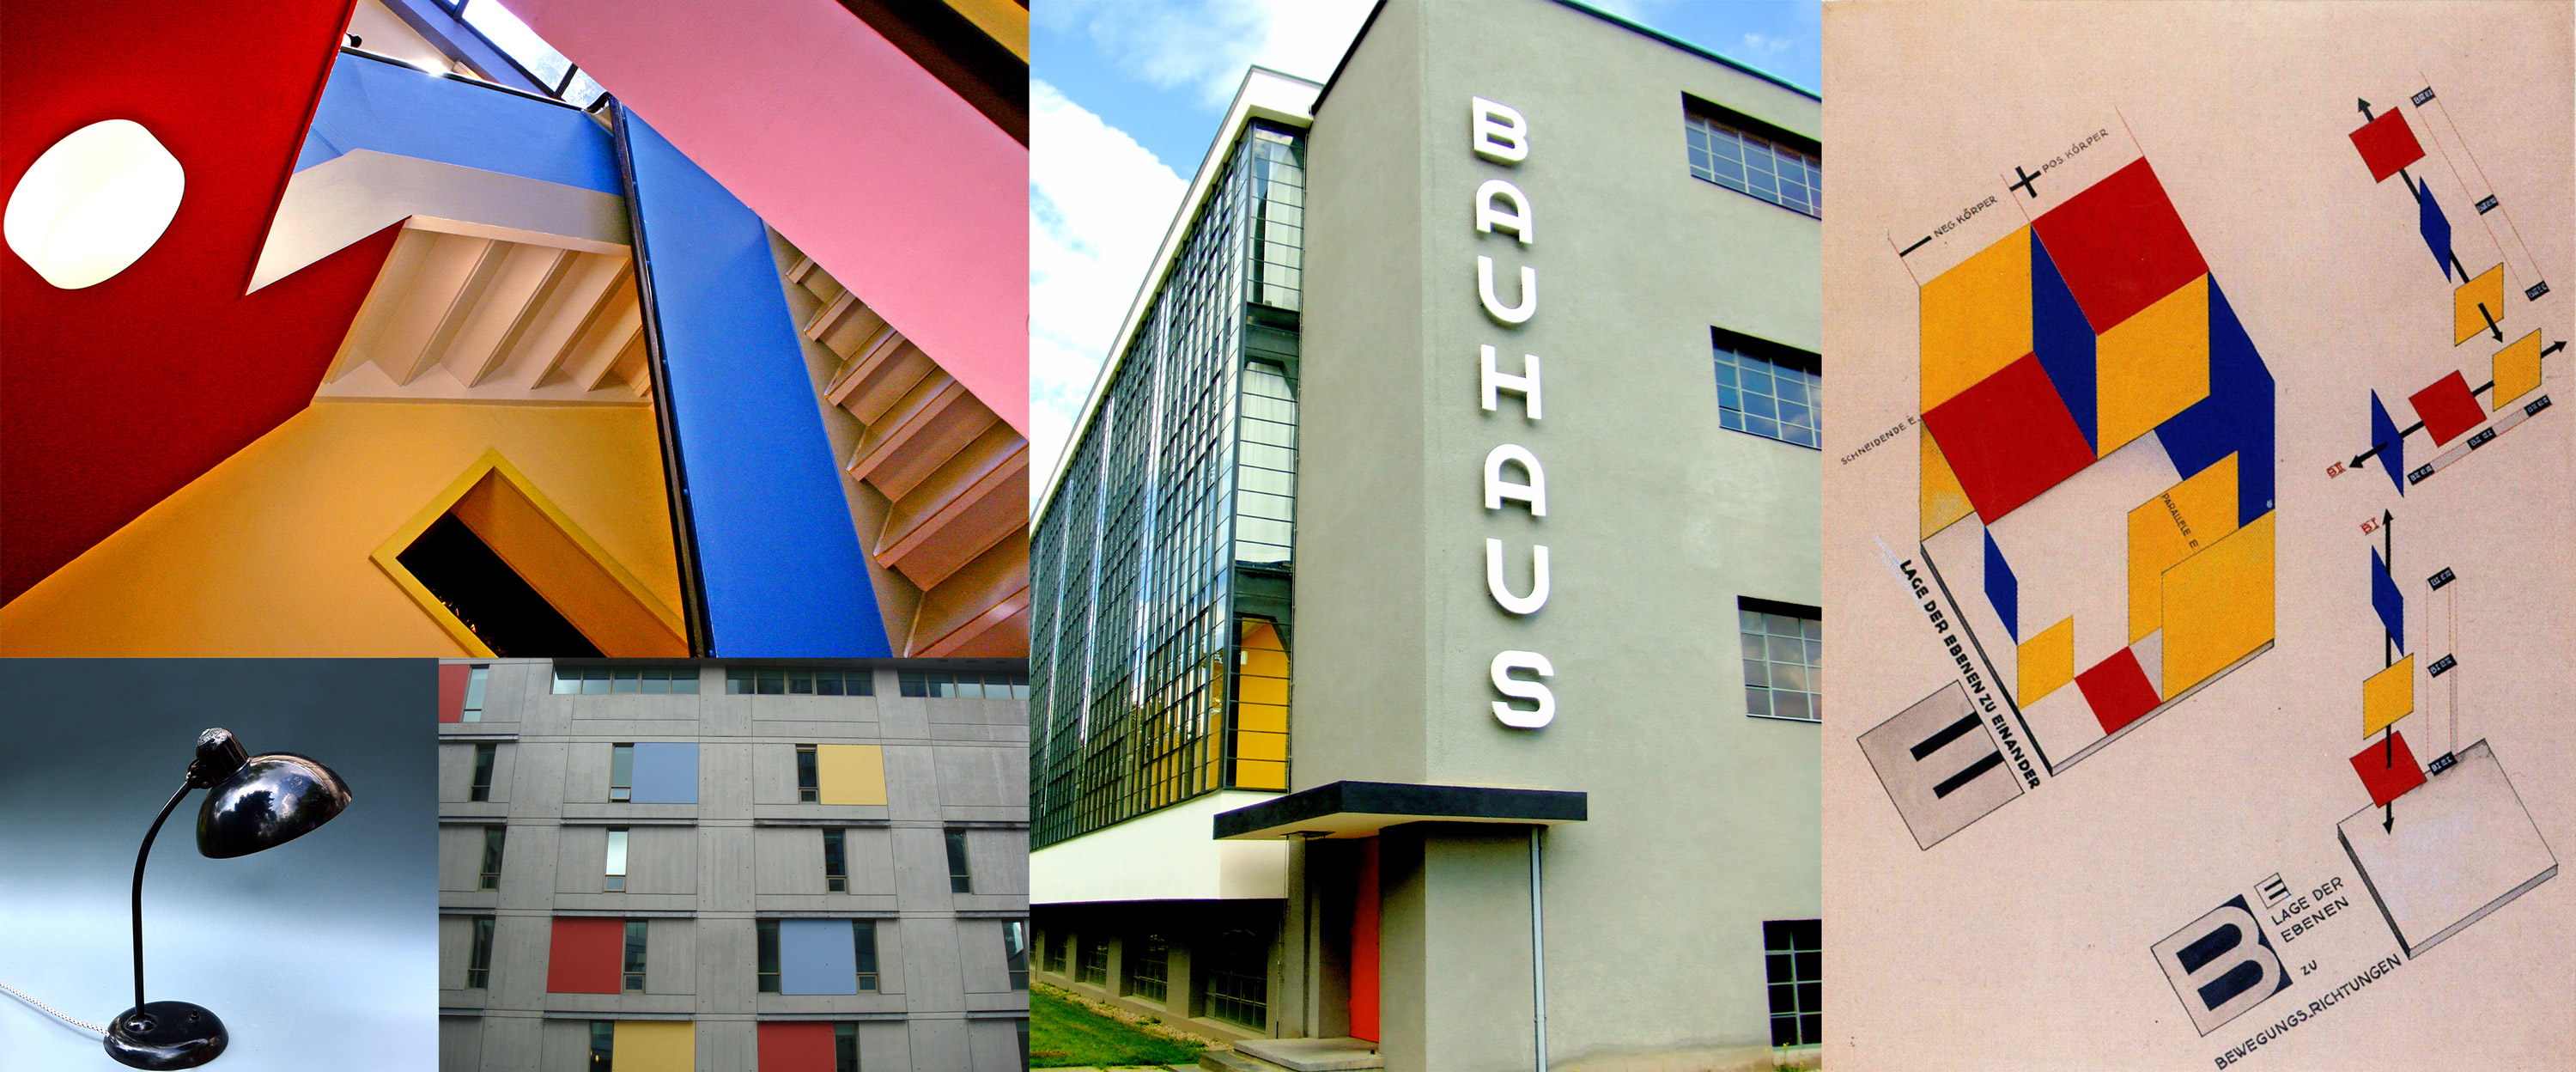 Bauhaus škola i njezini progresivni sljedbenici između dva rata u Njemačkoj - spoj umjetnosti i industrije, borba protiv imitacije, inferiorne izrade i diletantizma